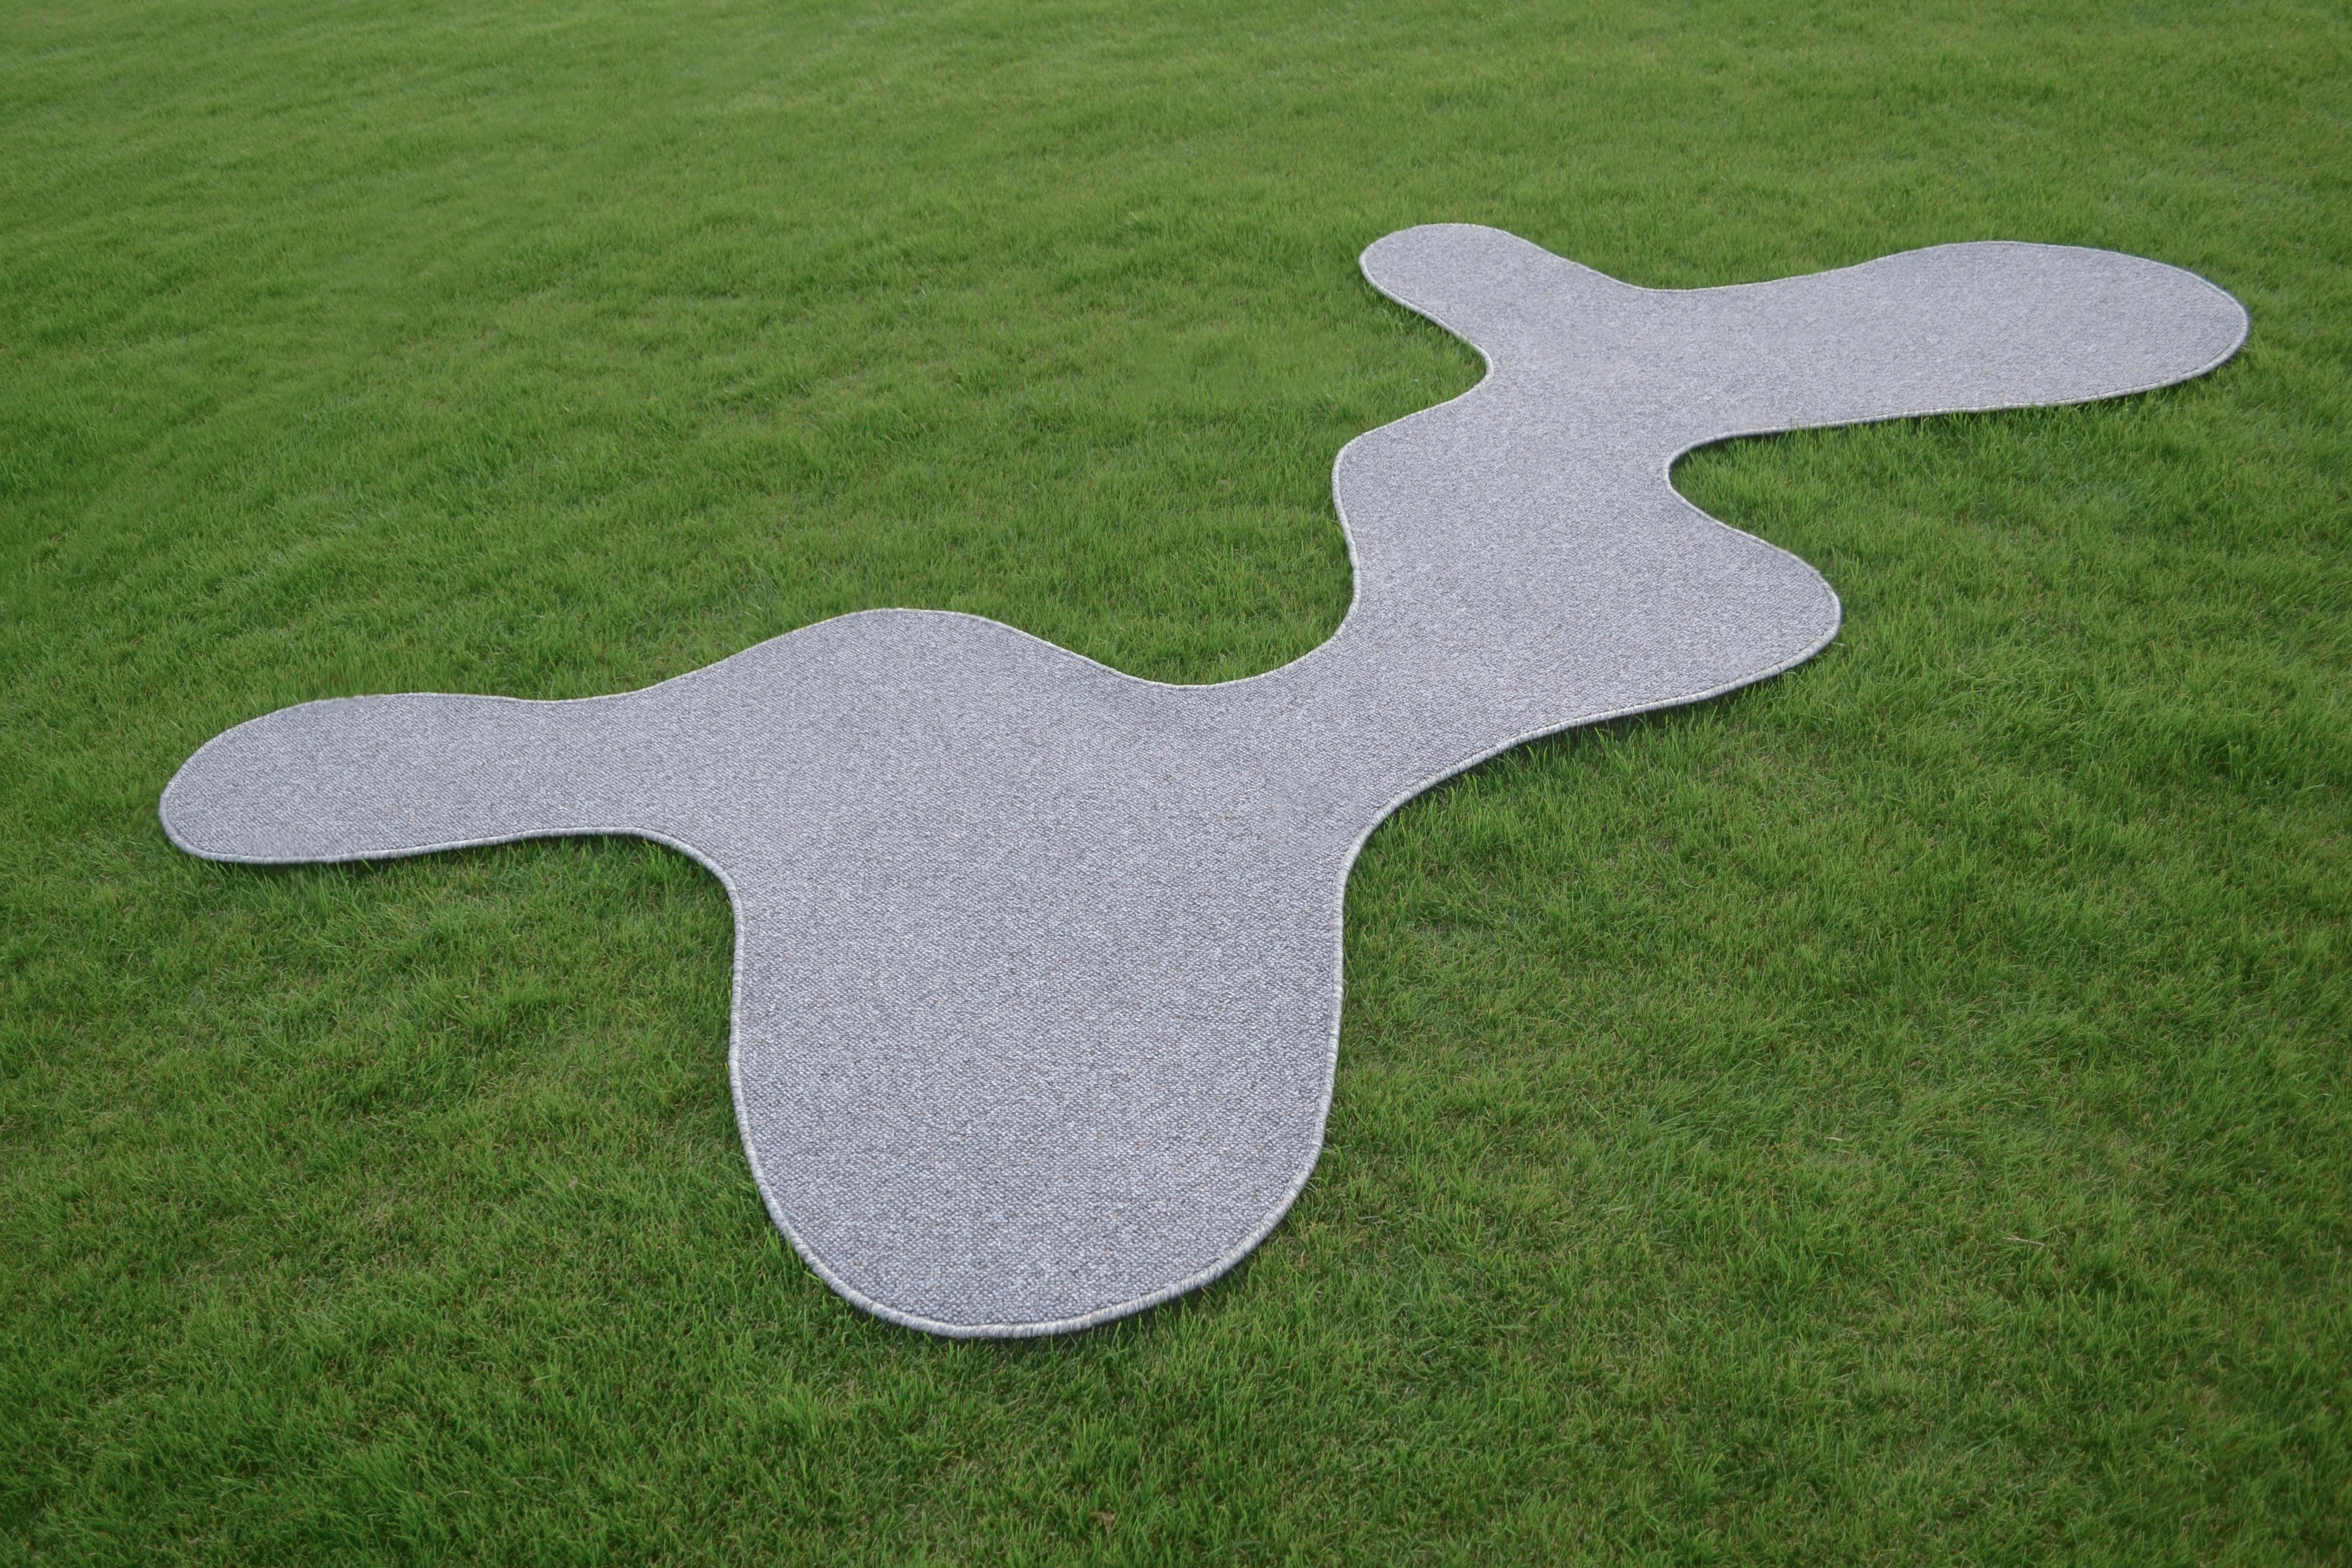 AKI rug B ist ein organisch geformter Teppich, der in Kombination mit den Elementen, die ihn umgeben, verschiedene Formen bildet, wie eine negative Raumzeichnung auf dem Boden.

Mit dem Ziel, das Unerwartete des Organischen zu umarmen, sind die